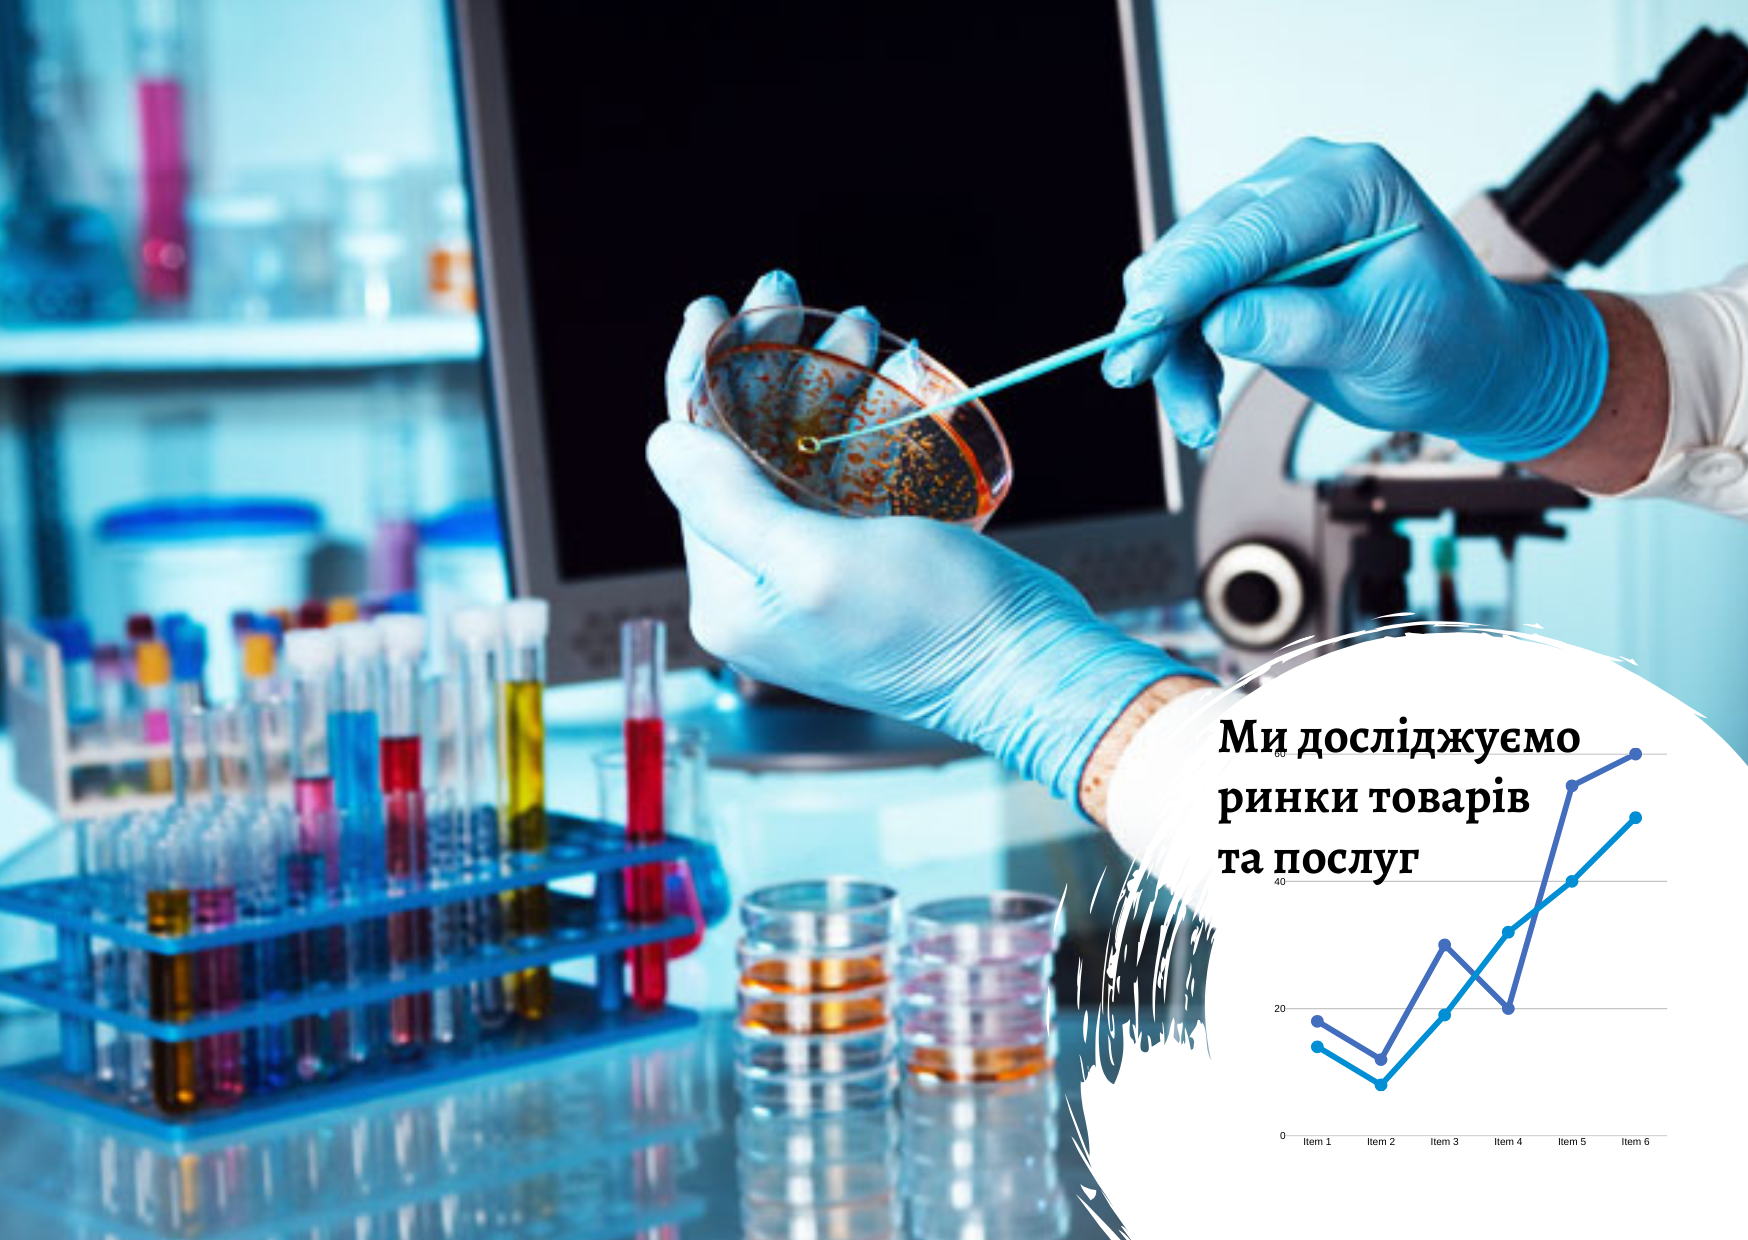 Ukrainian laboratory services market in Ukraine: factors and trends